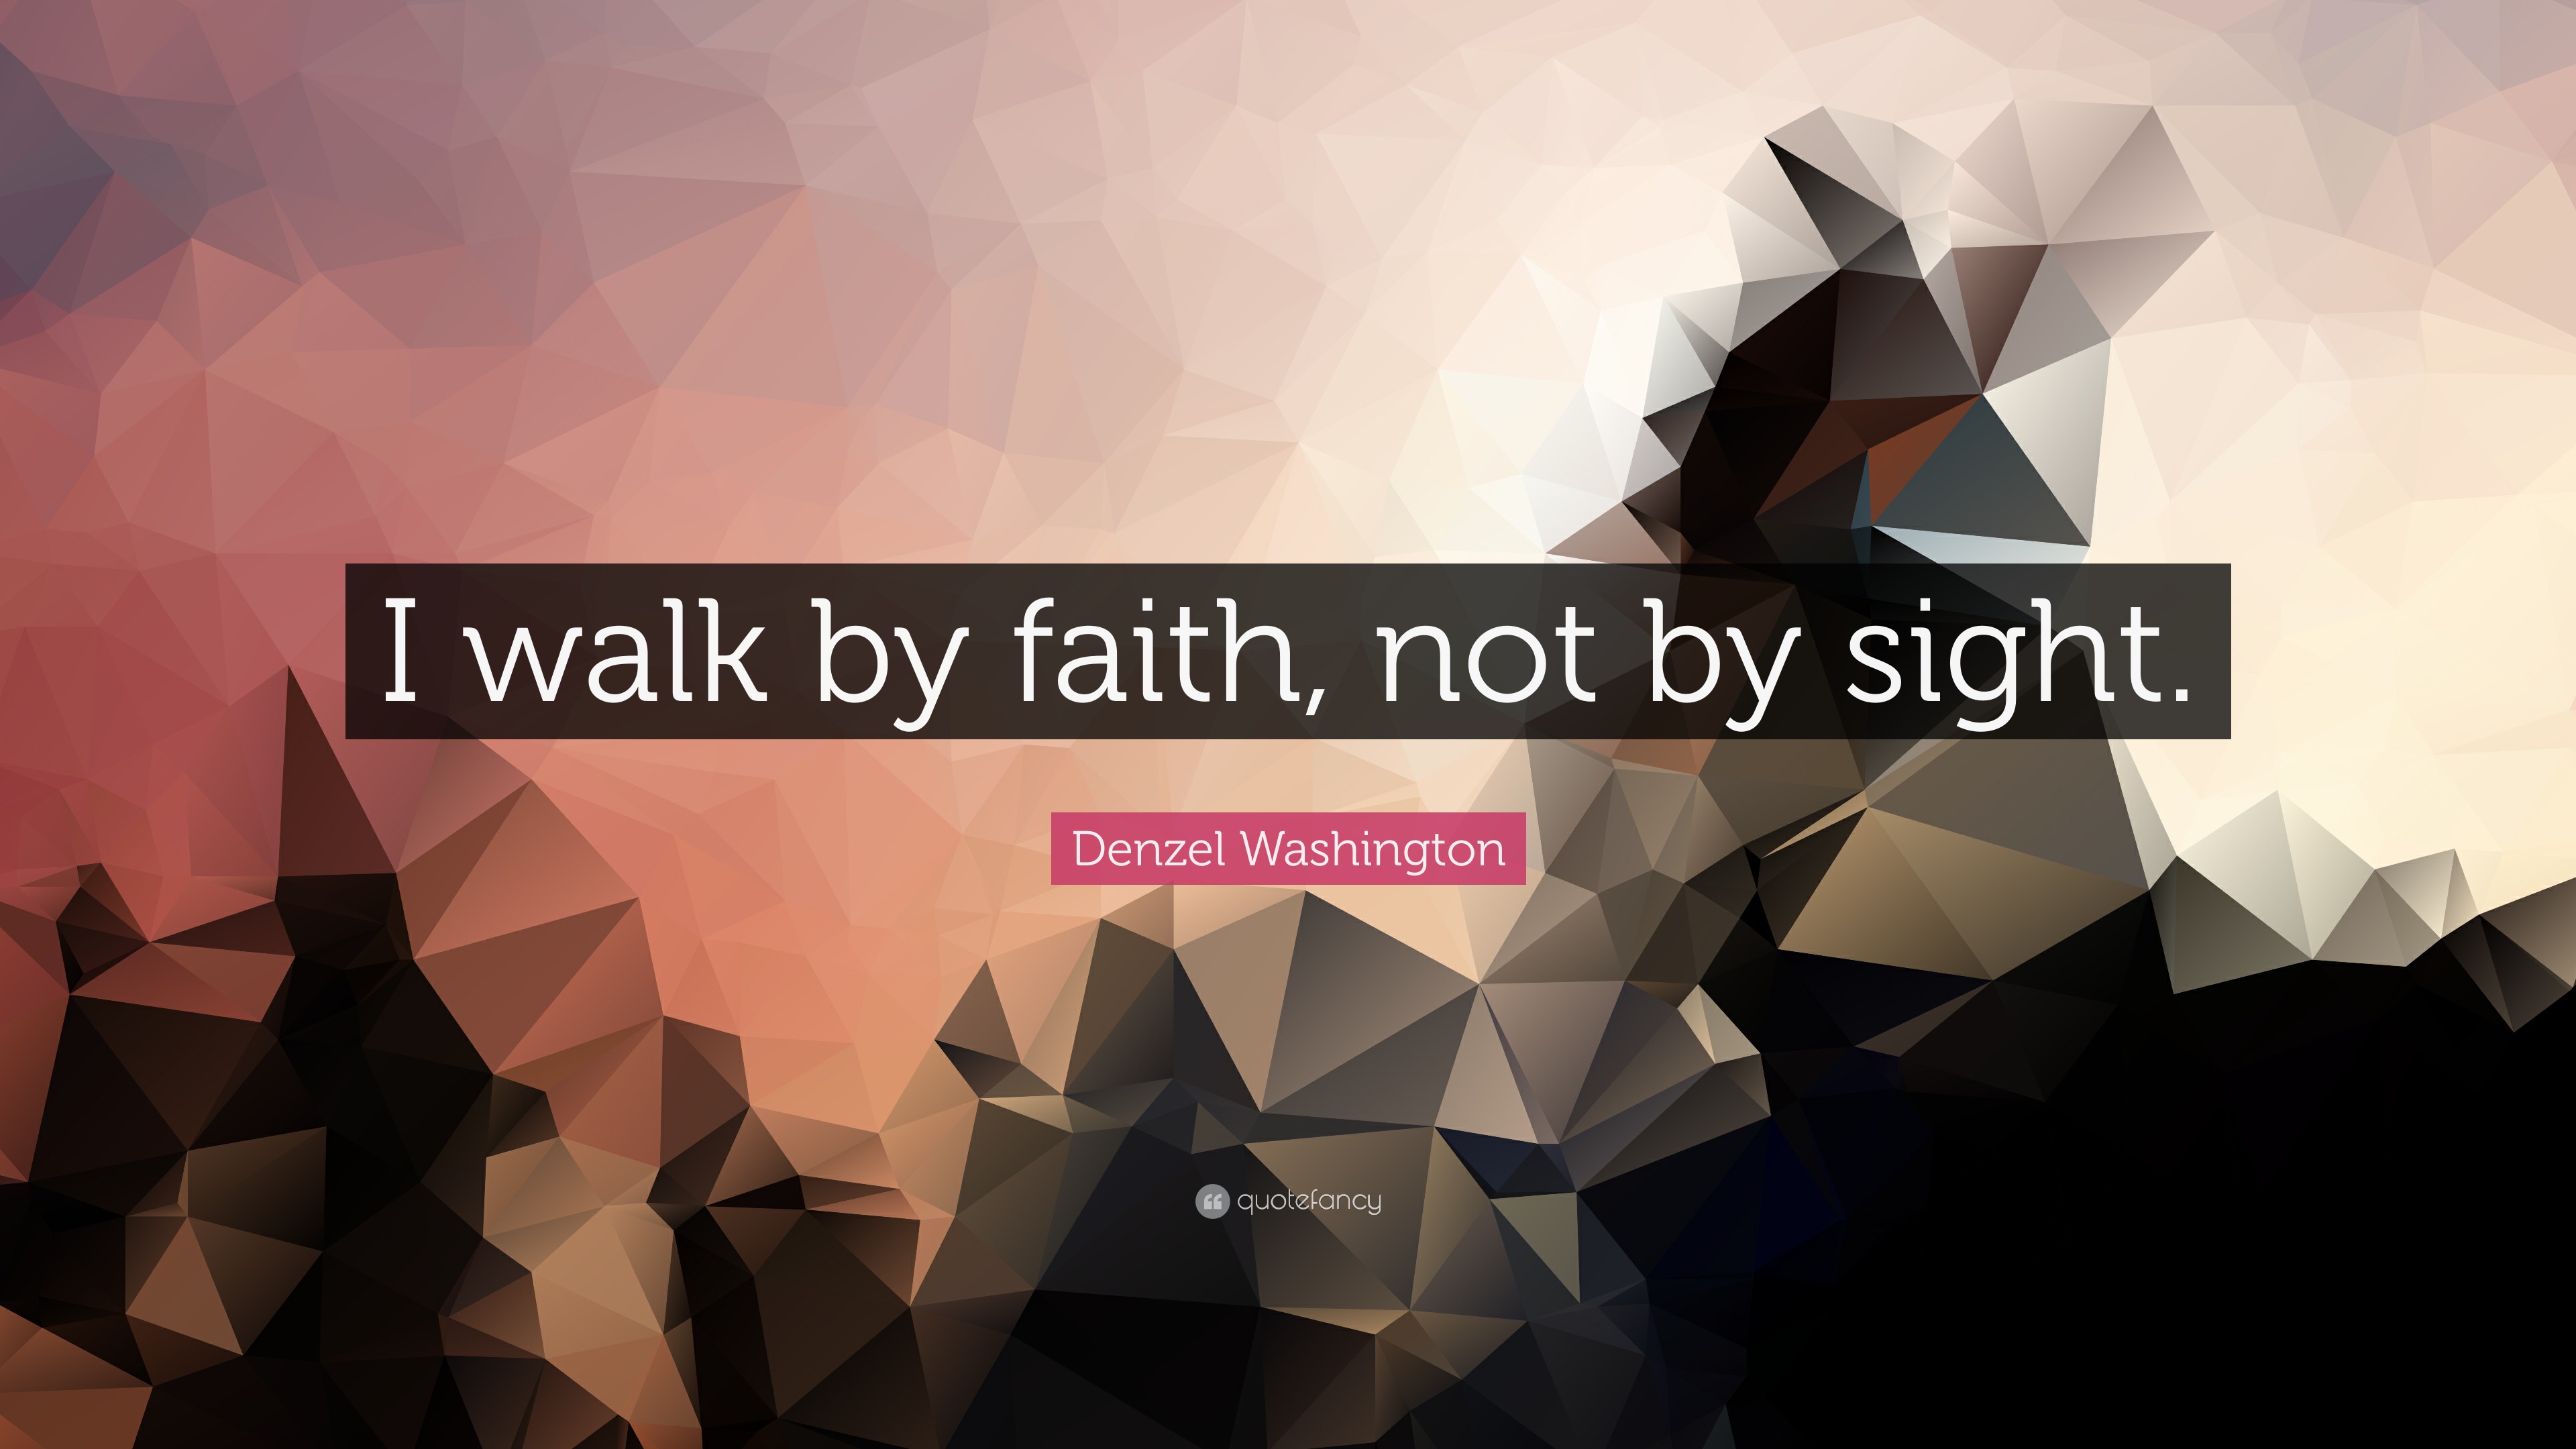 Denzel Washington Quote: “I walk by faith, not by sight.”